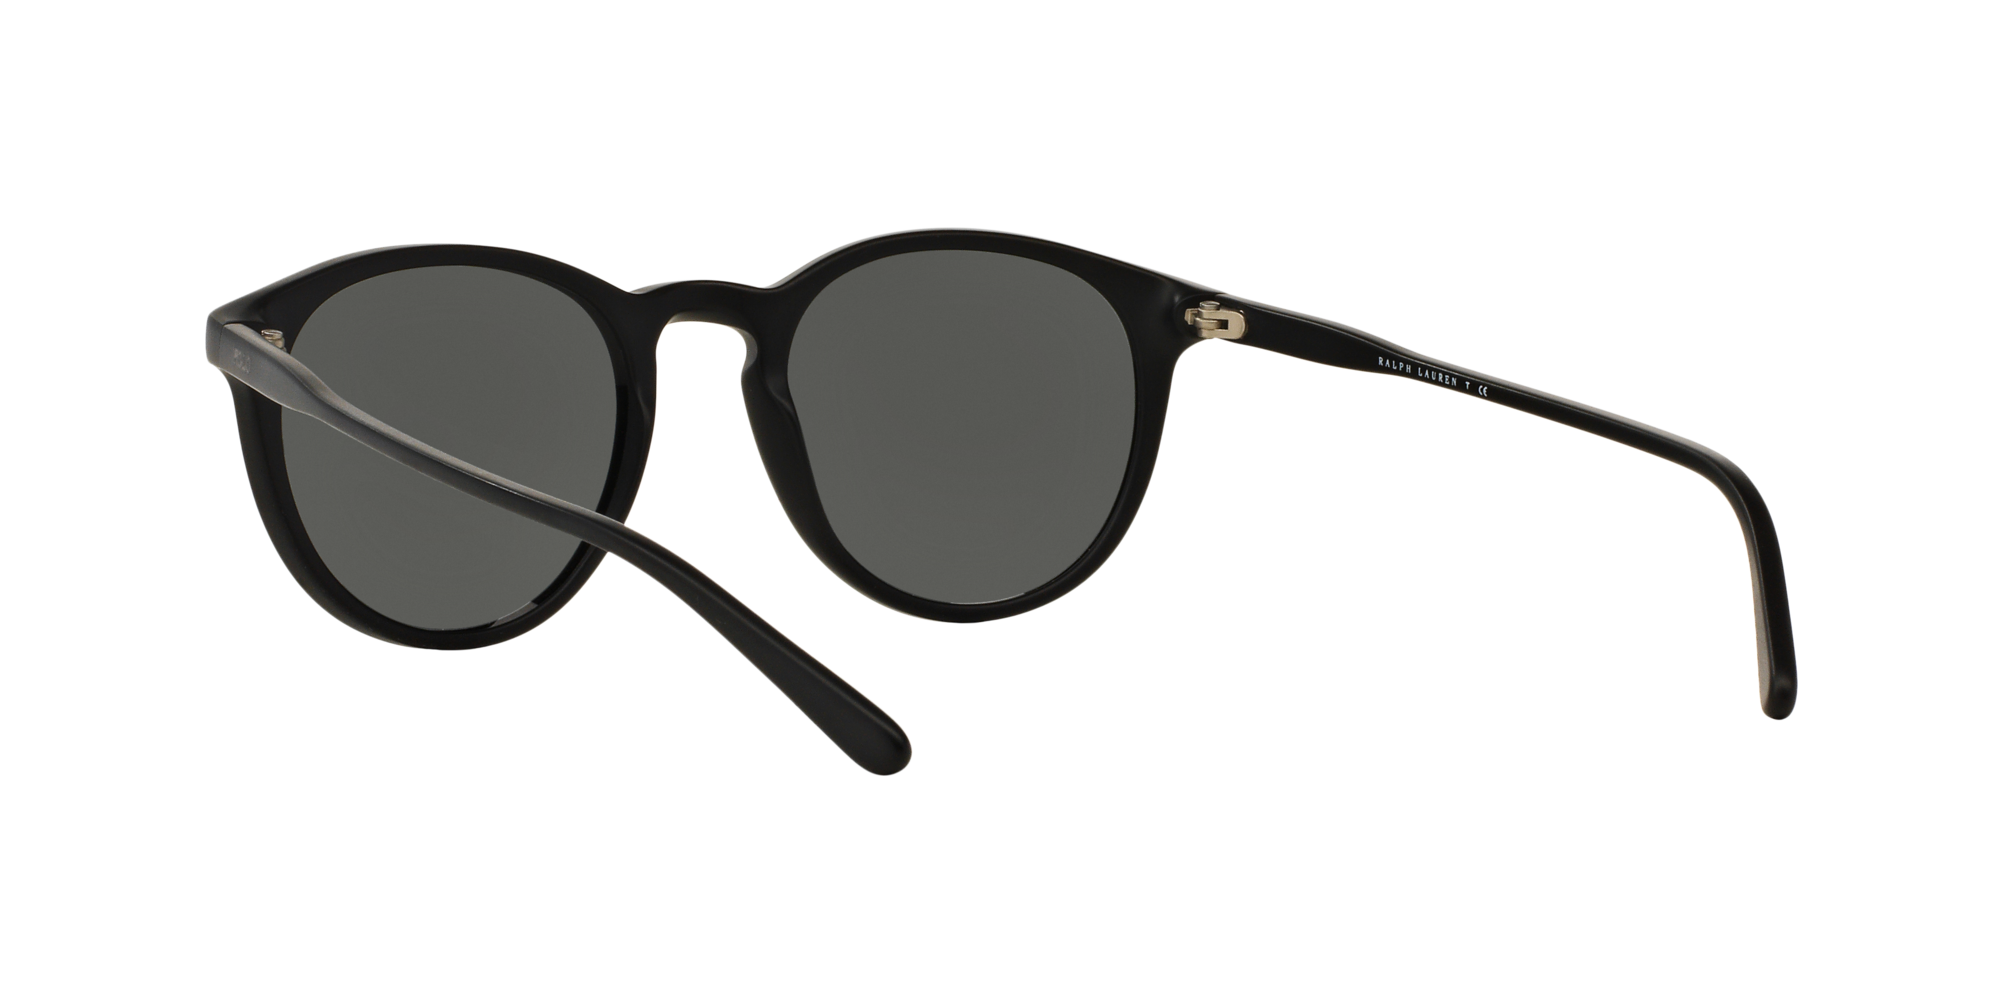 Polo Ralph Lauren Sonnenbrille in schwarz PH4110 528487